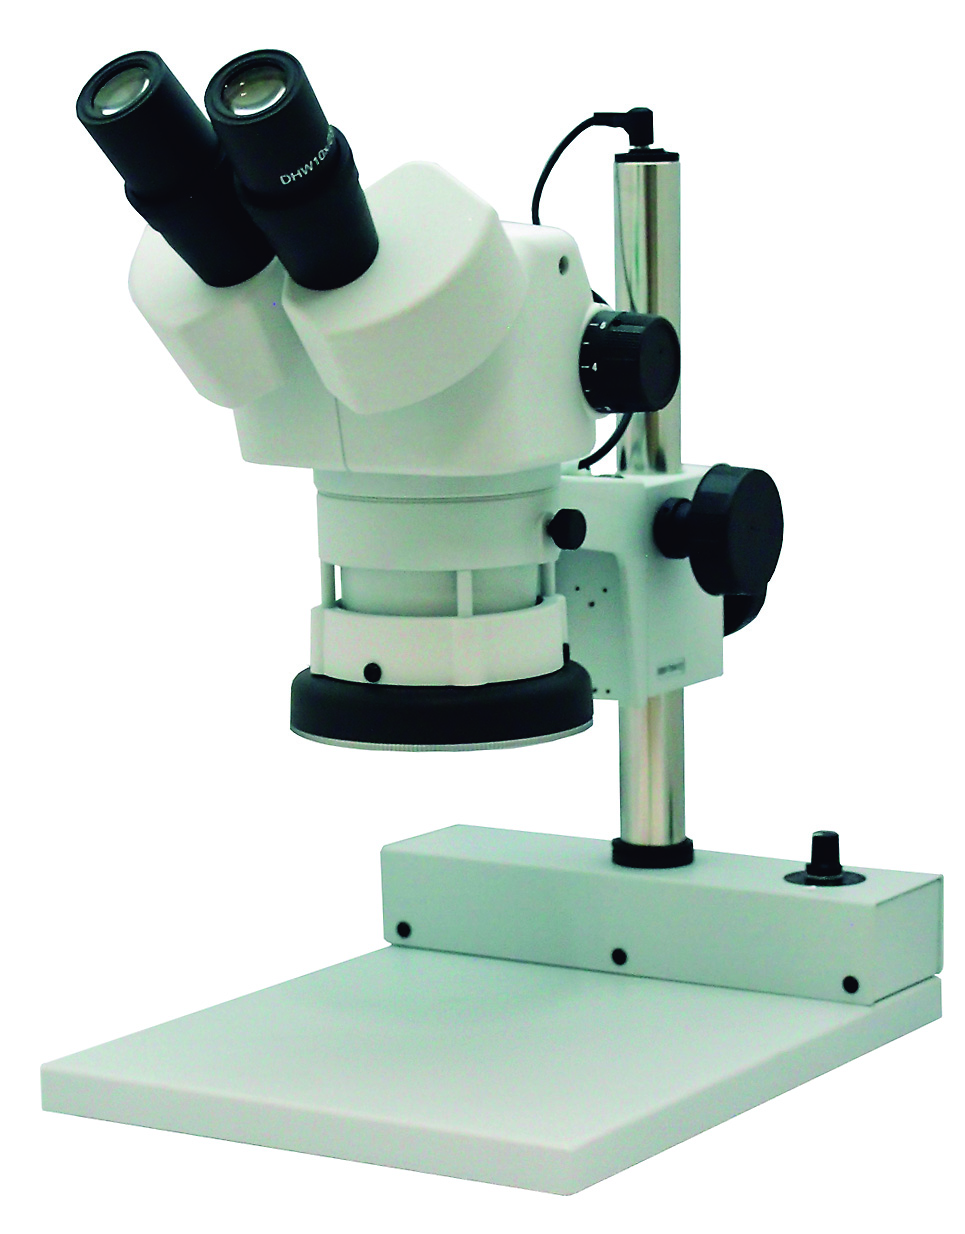 カートン光学 ズームシステム実体顕微鏡<双眼式> ESD静電気対策